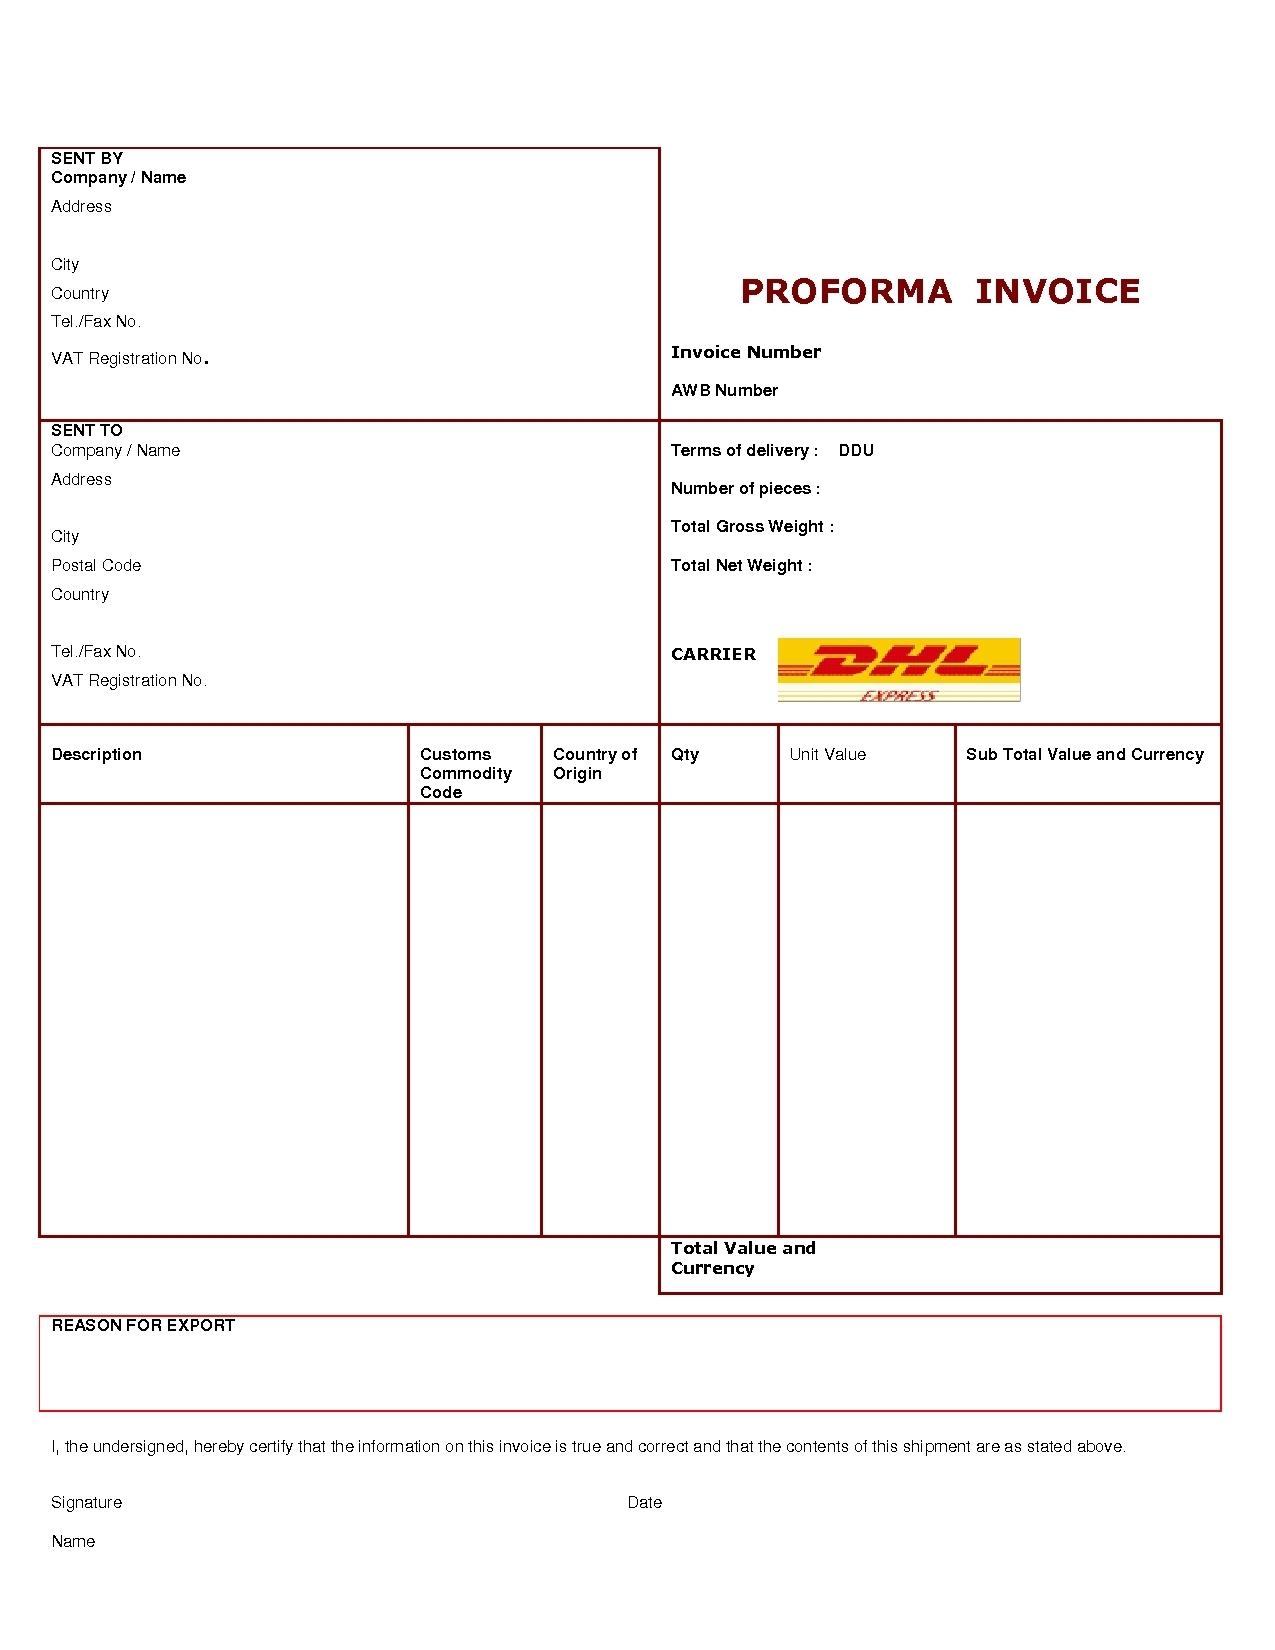 dhl proforma invoice template design invoice template proforma invoice dhl